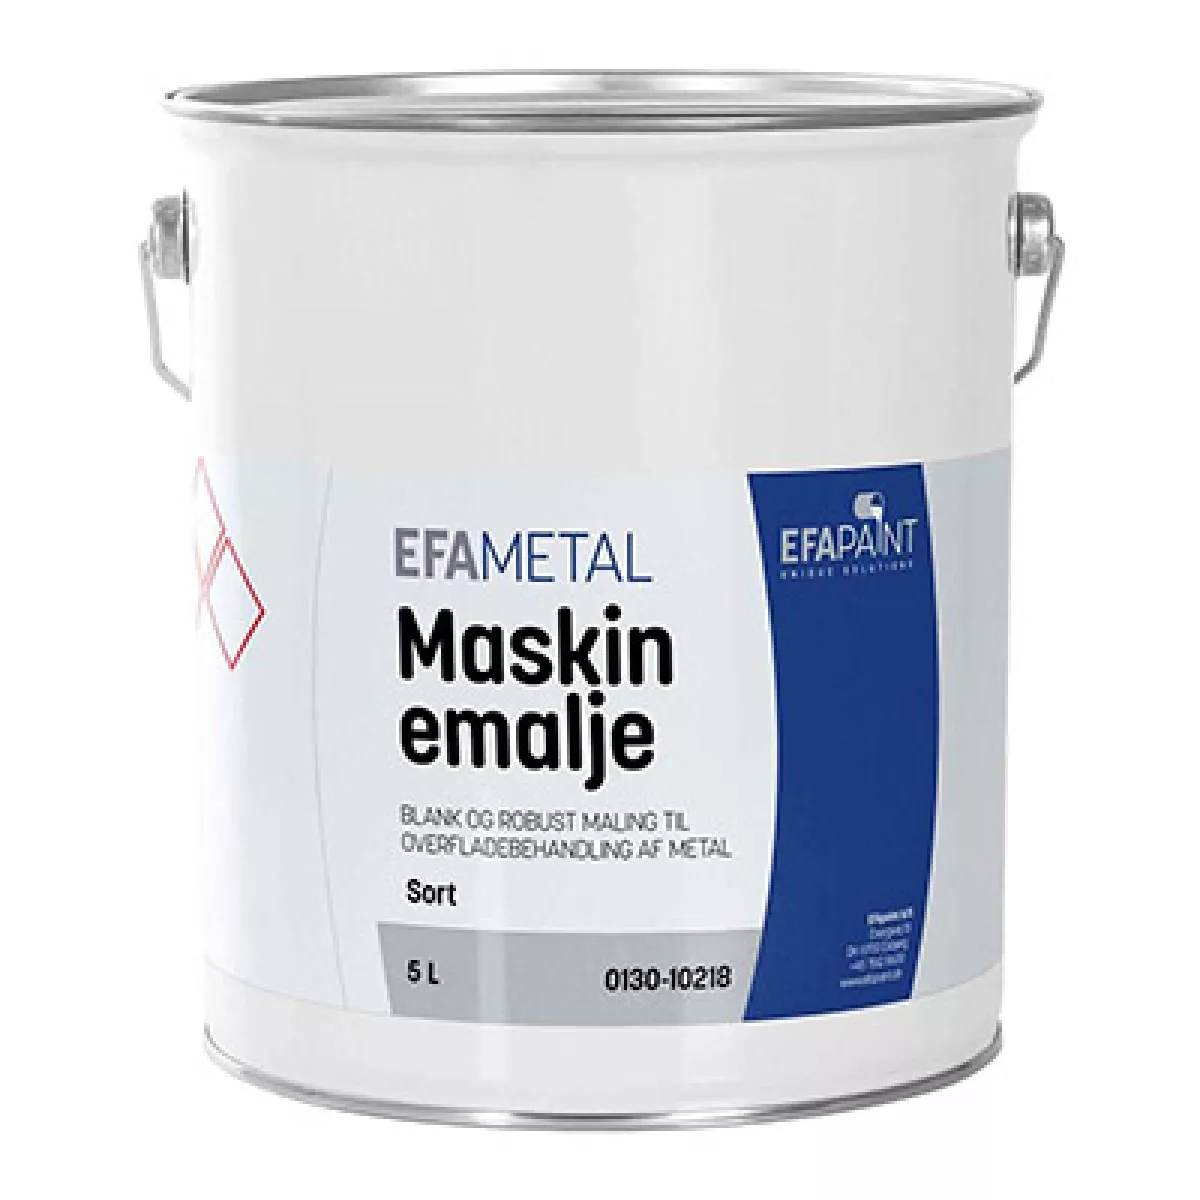 #3 - Esbjerg Maskinemalje 5 ltr. - SPAR 25% 0130-20905 - Brilliantblå